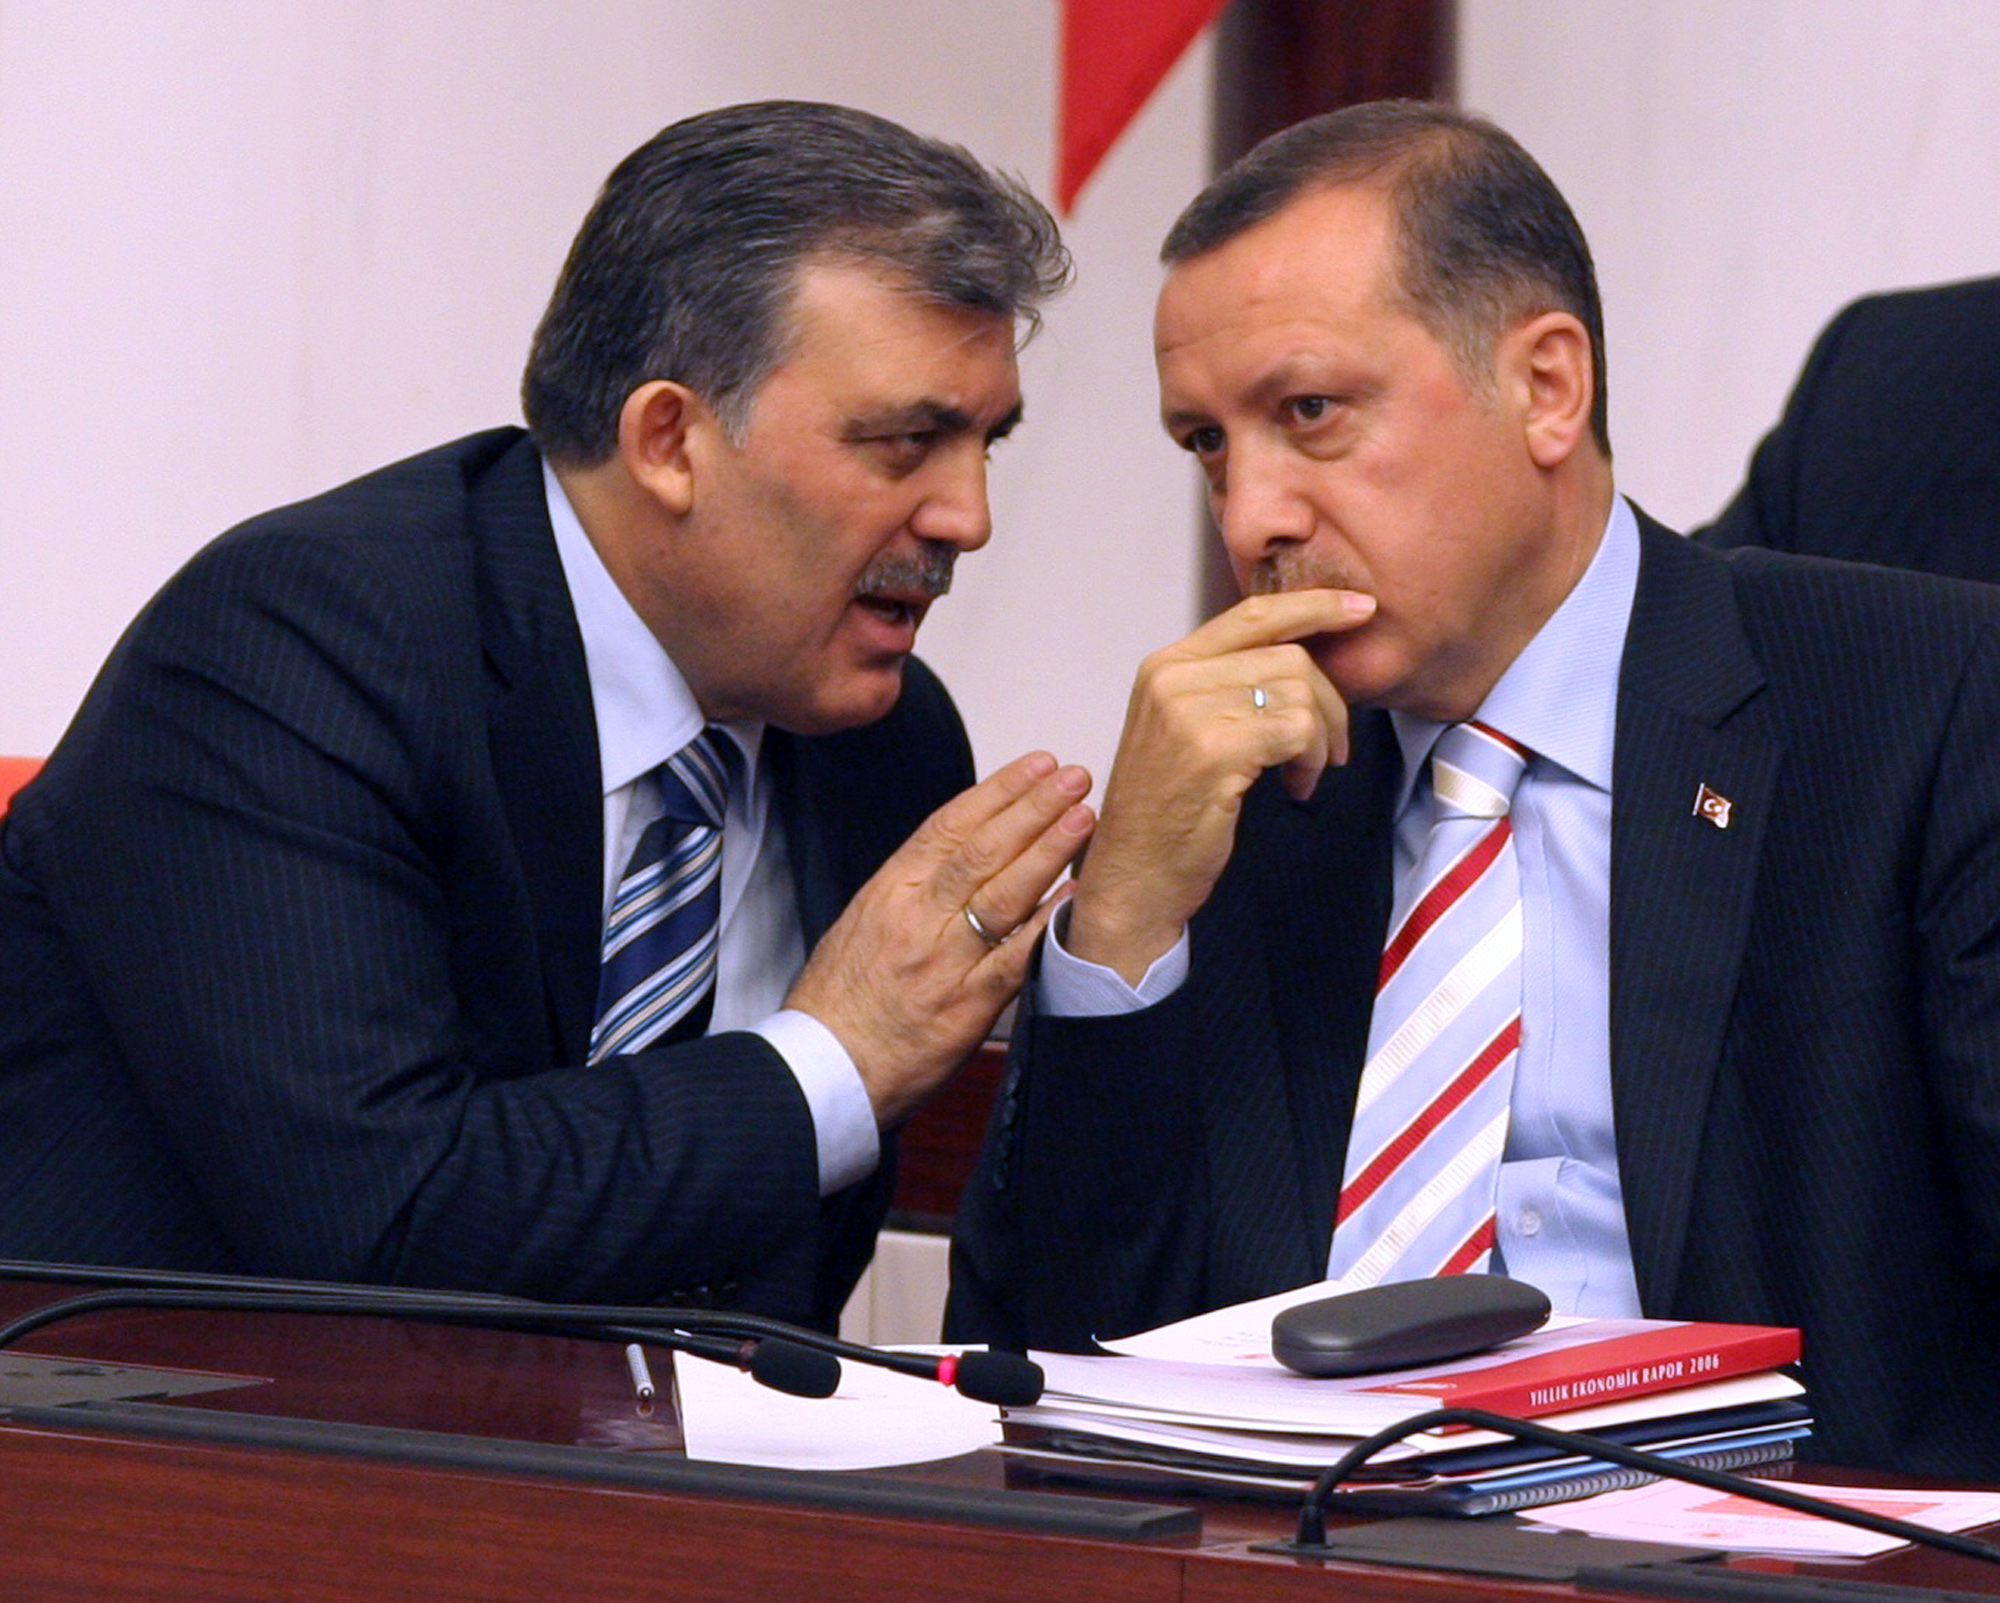 Θα συλληφθεί και ο γιος του Ερντογάν για την μεγάλη υπόθεση διαφθοράς; Με τον Γκιούλ συναντάται ο πρωθυπουργός